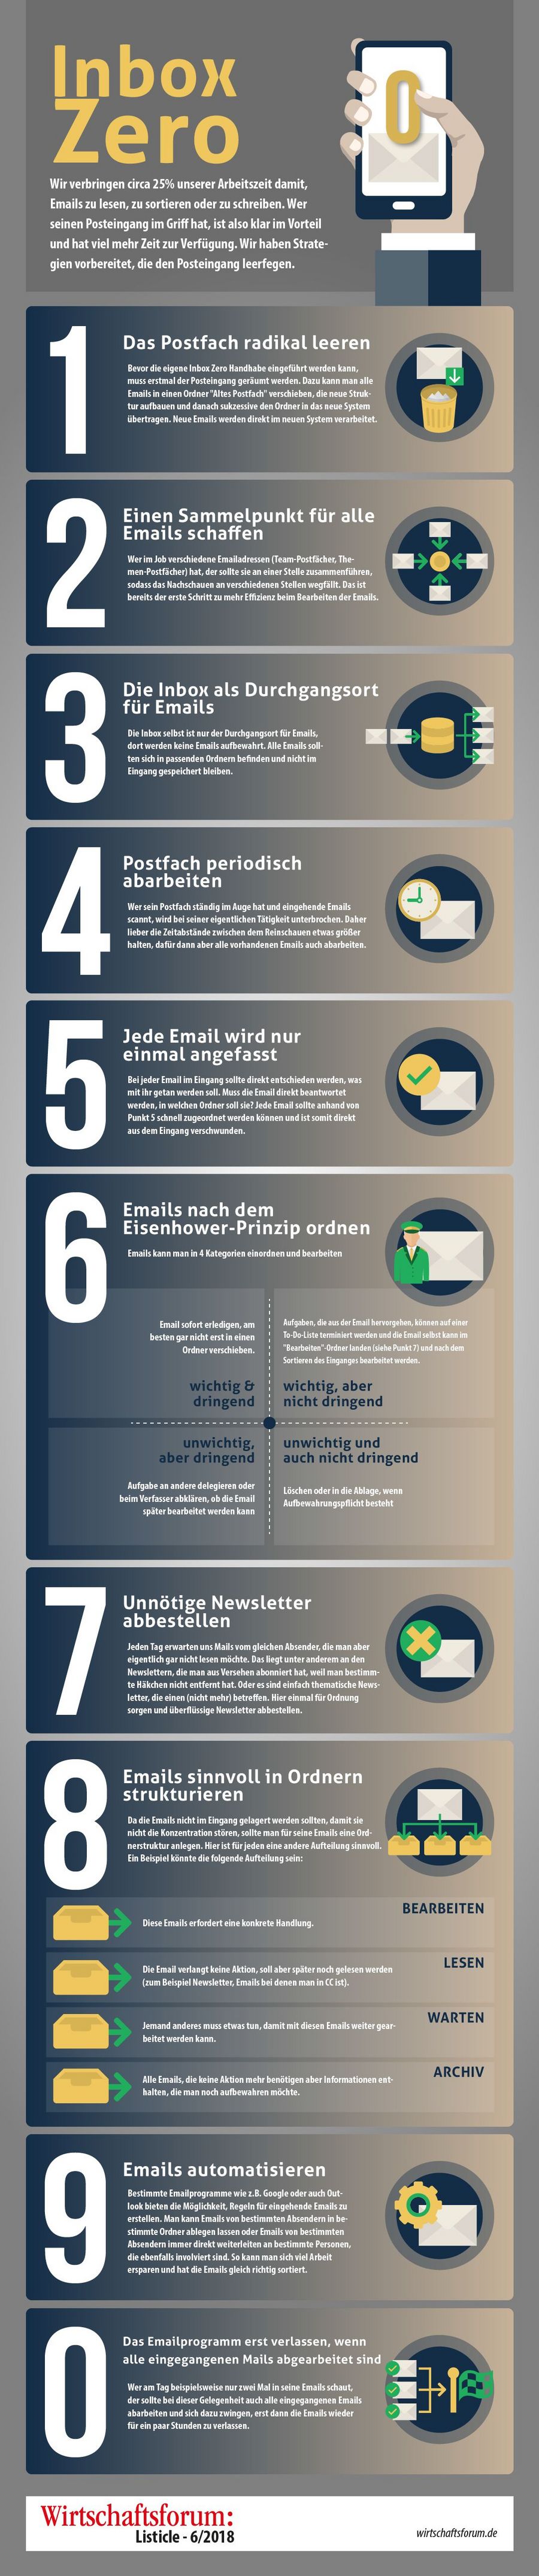 Inbox Zero - Diese 10 Tipps machen ungelesenen Emails den Garaus - Wirtschaftsforum Listicles